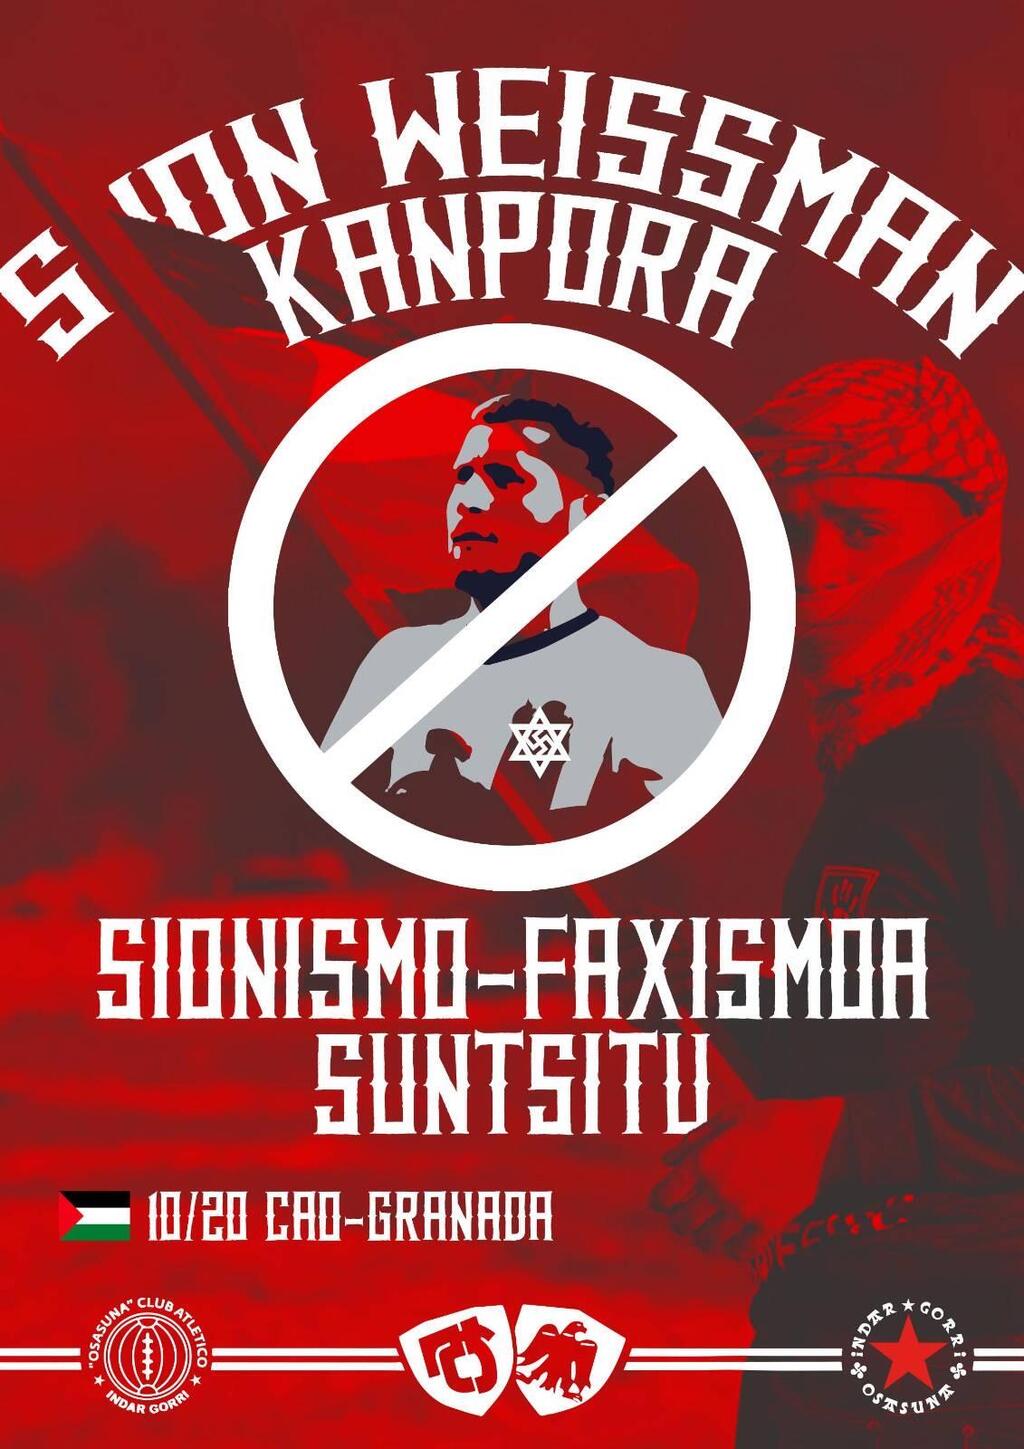 הכרזה האנטישמית באתר אוהדי אוסאסונה